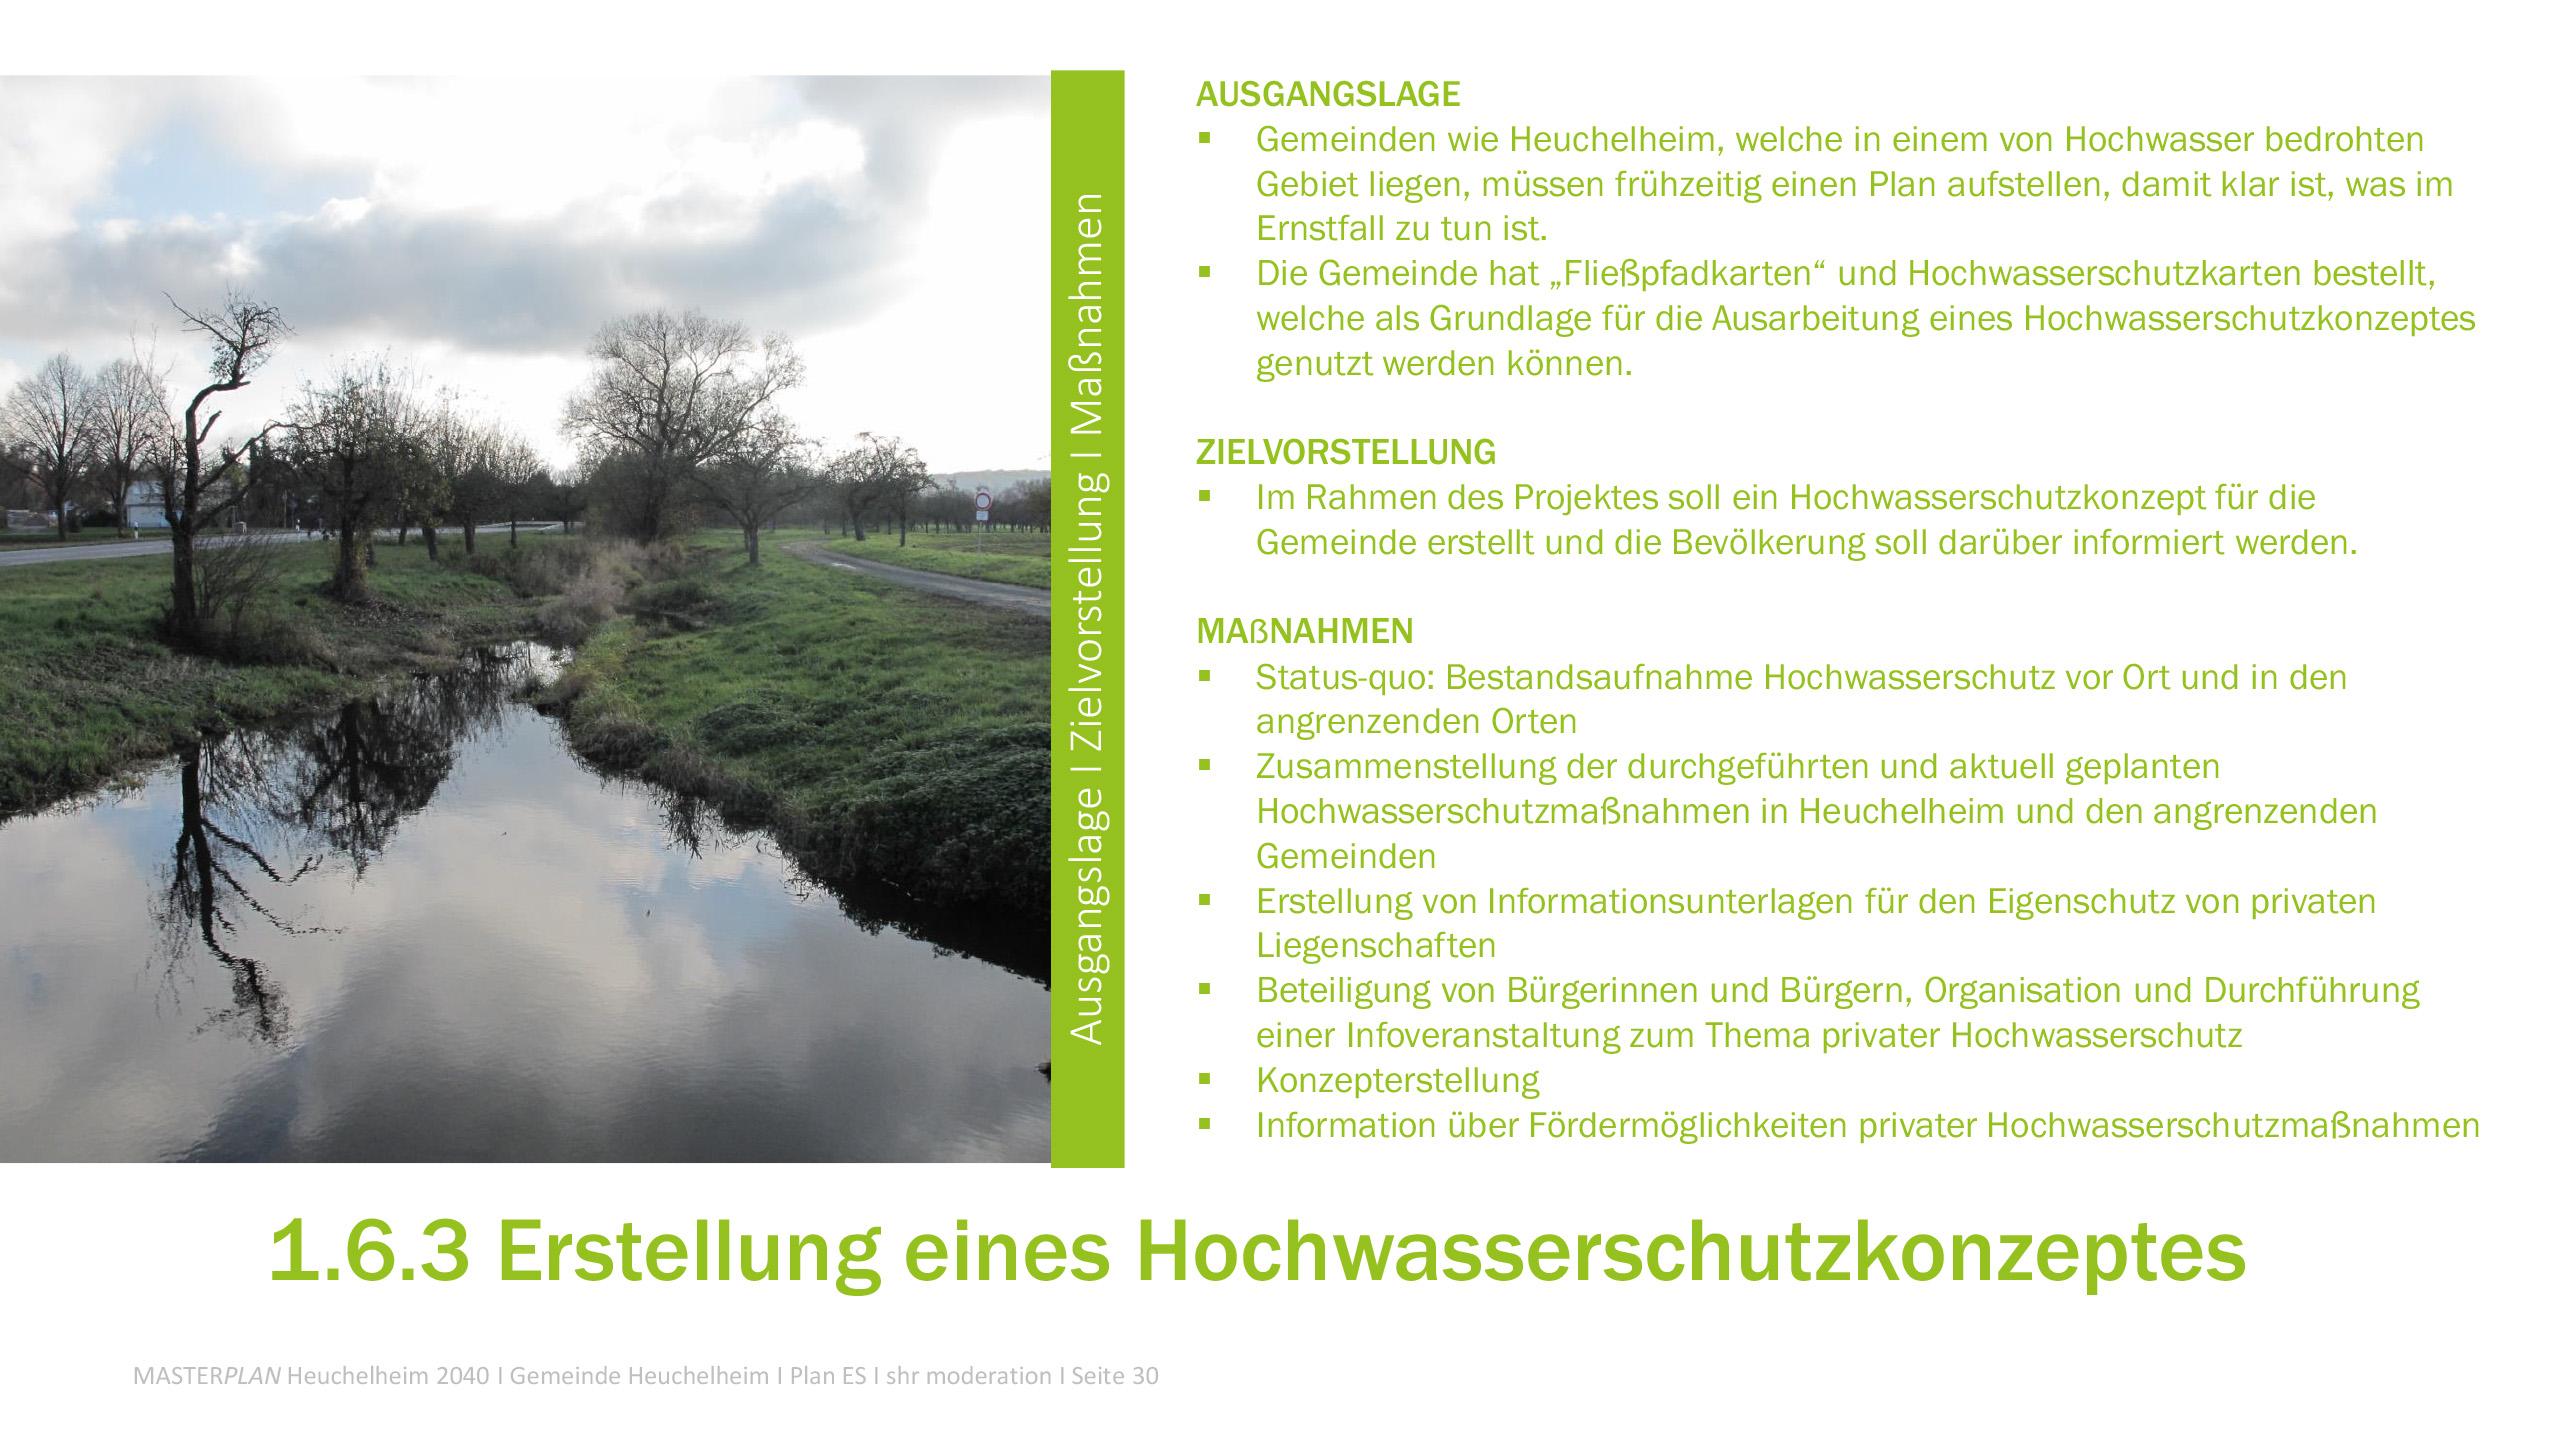 Masterplan Heuchelheim-Aktuelle Projekte-Erstellung eines Hochwasserschutzkonzeptes